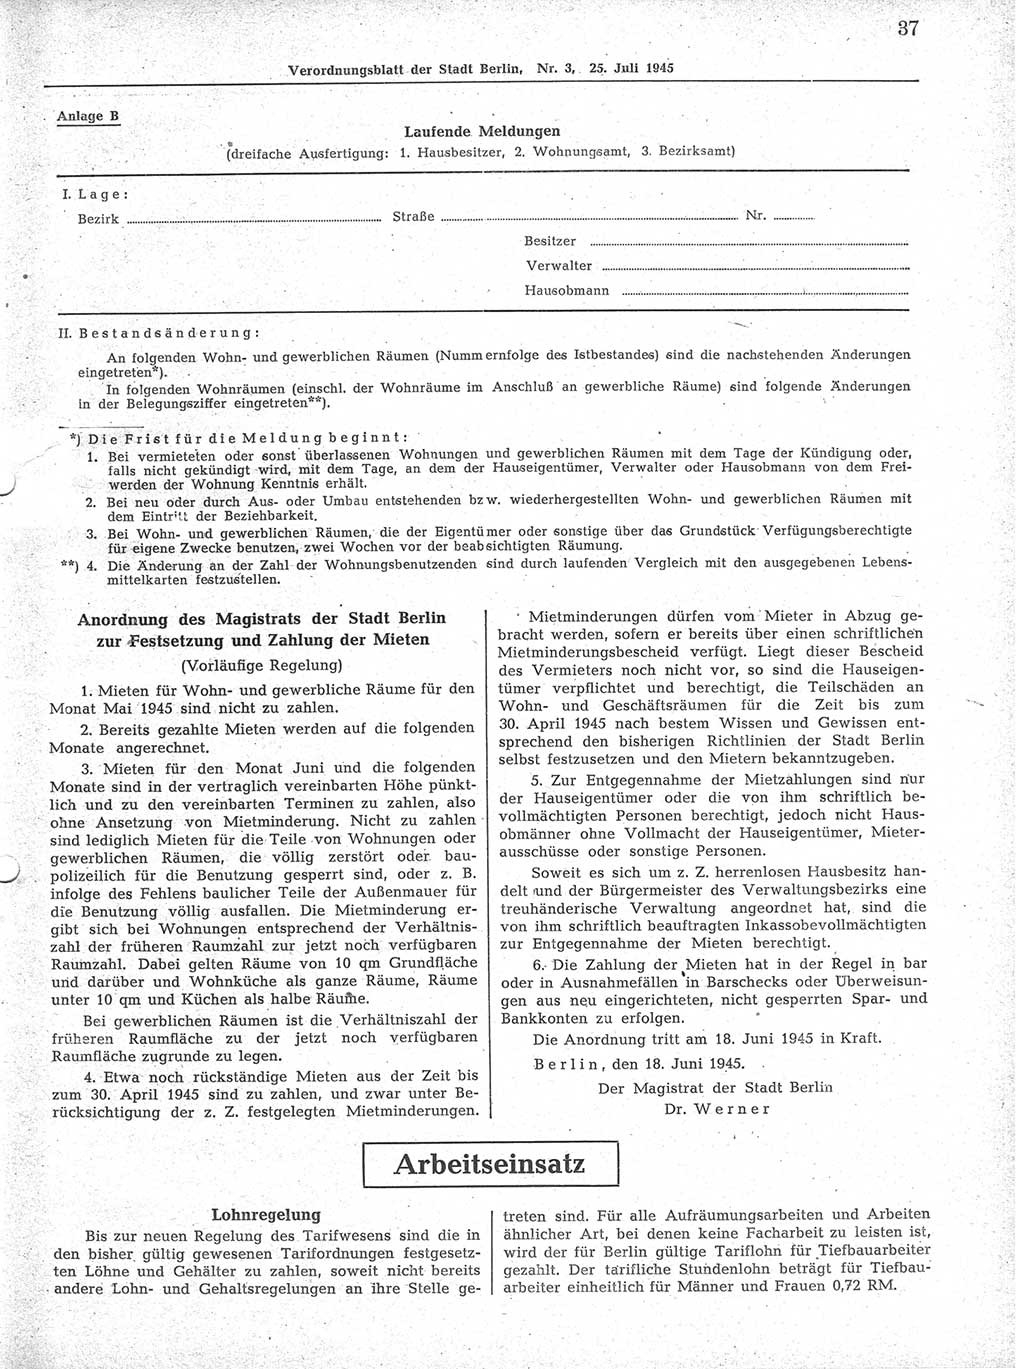 Verordnungsblatt (VOBl.) der Stadt Berlin 1945, Seite 37 (VOBl. Bln. 1945, S. 37)